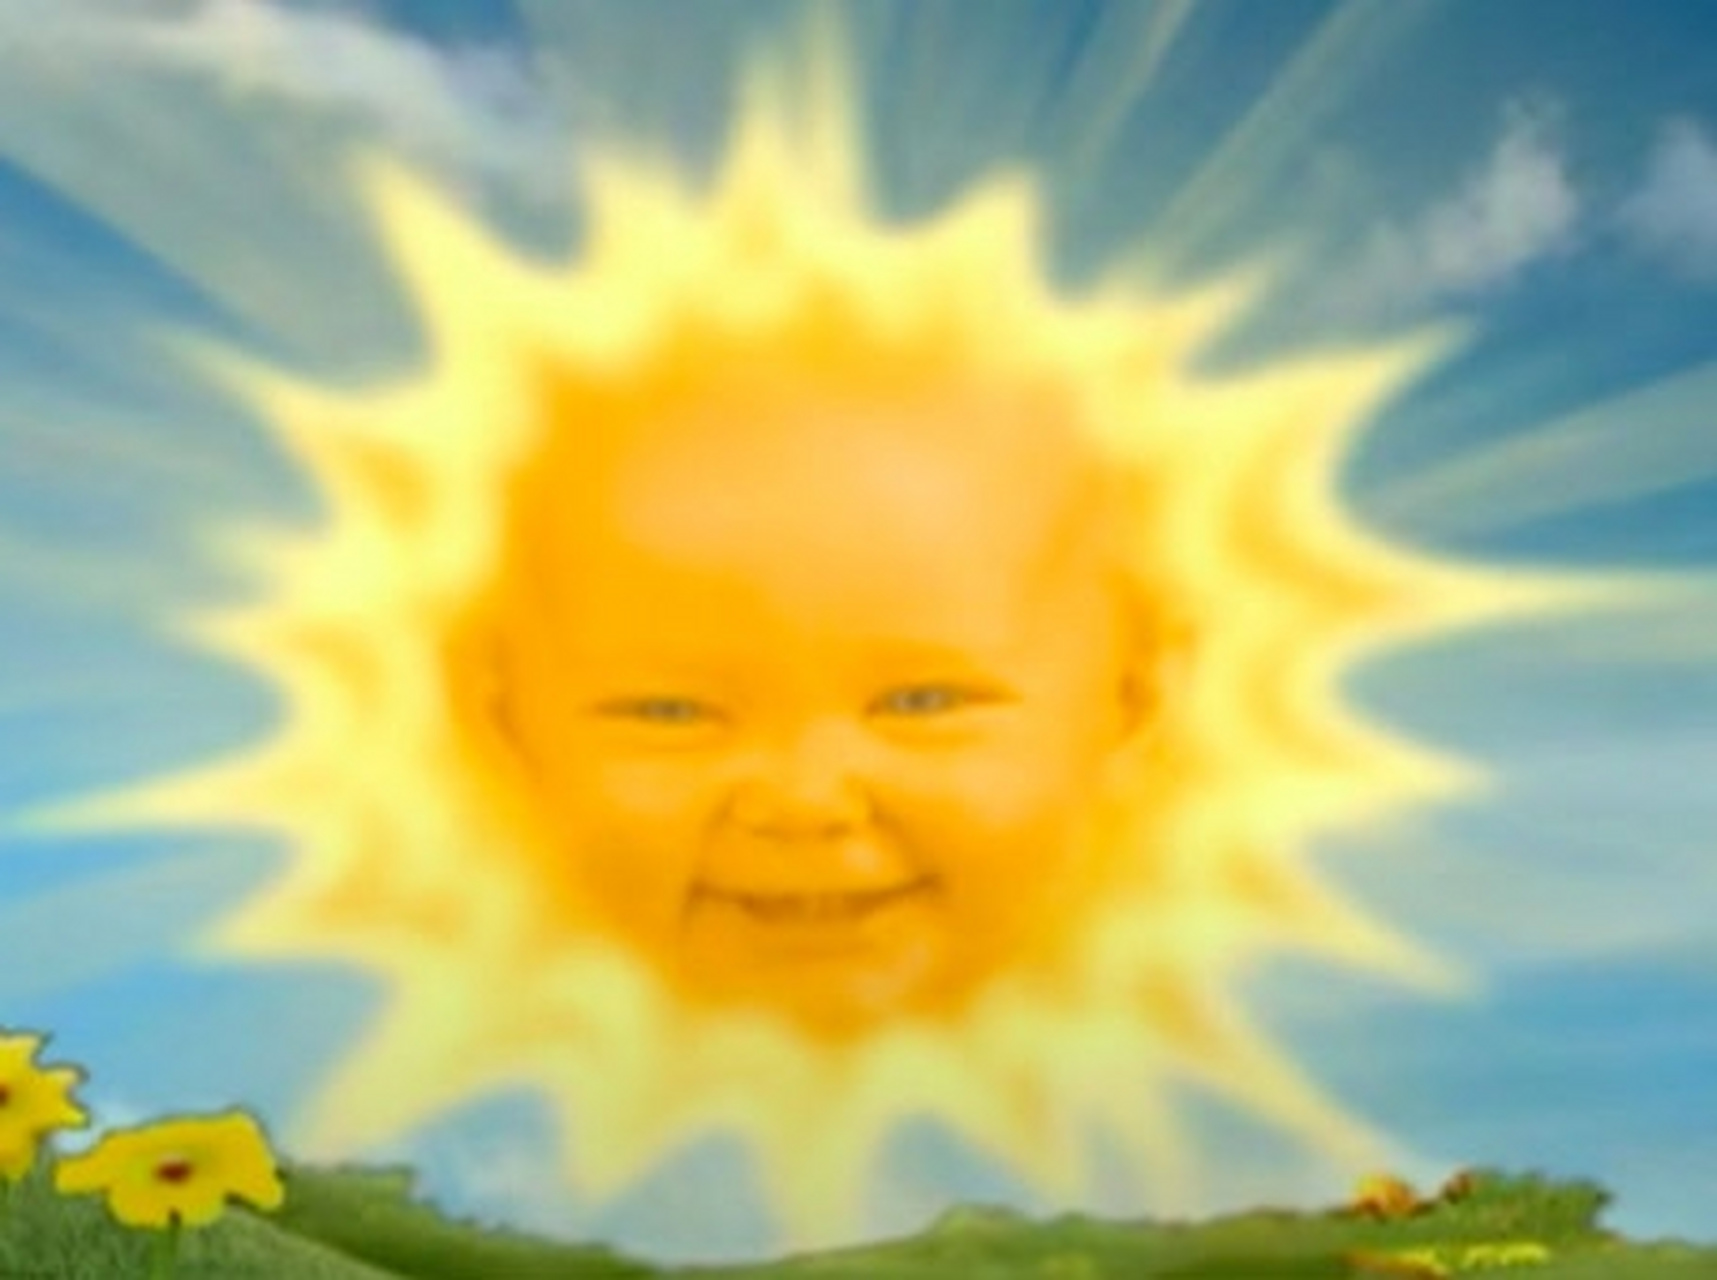 科学家拍到太阳露出天线宝宝式的微笑,是吉,是凶啊? 有懂的朋友吗?